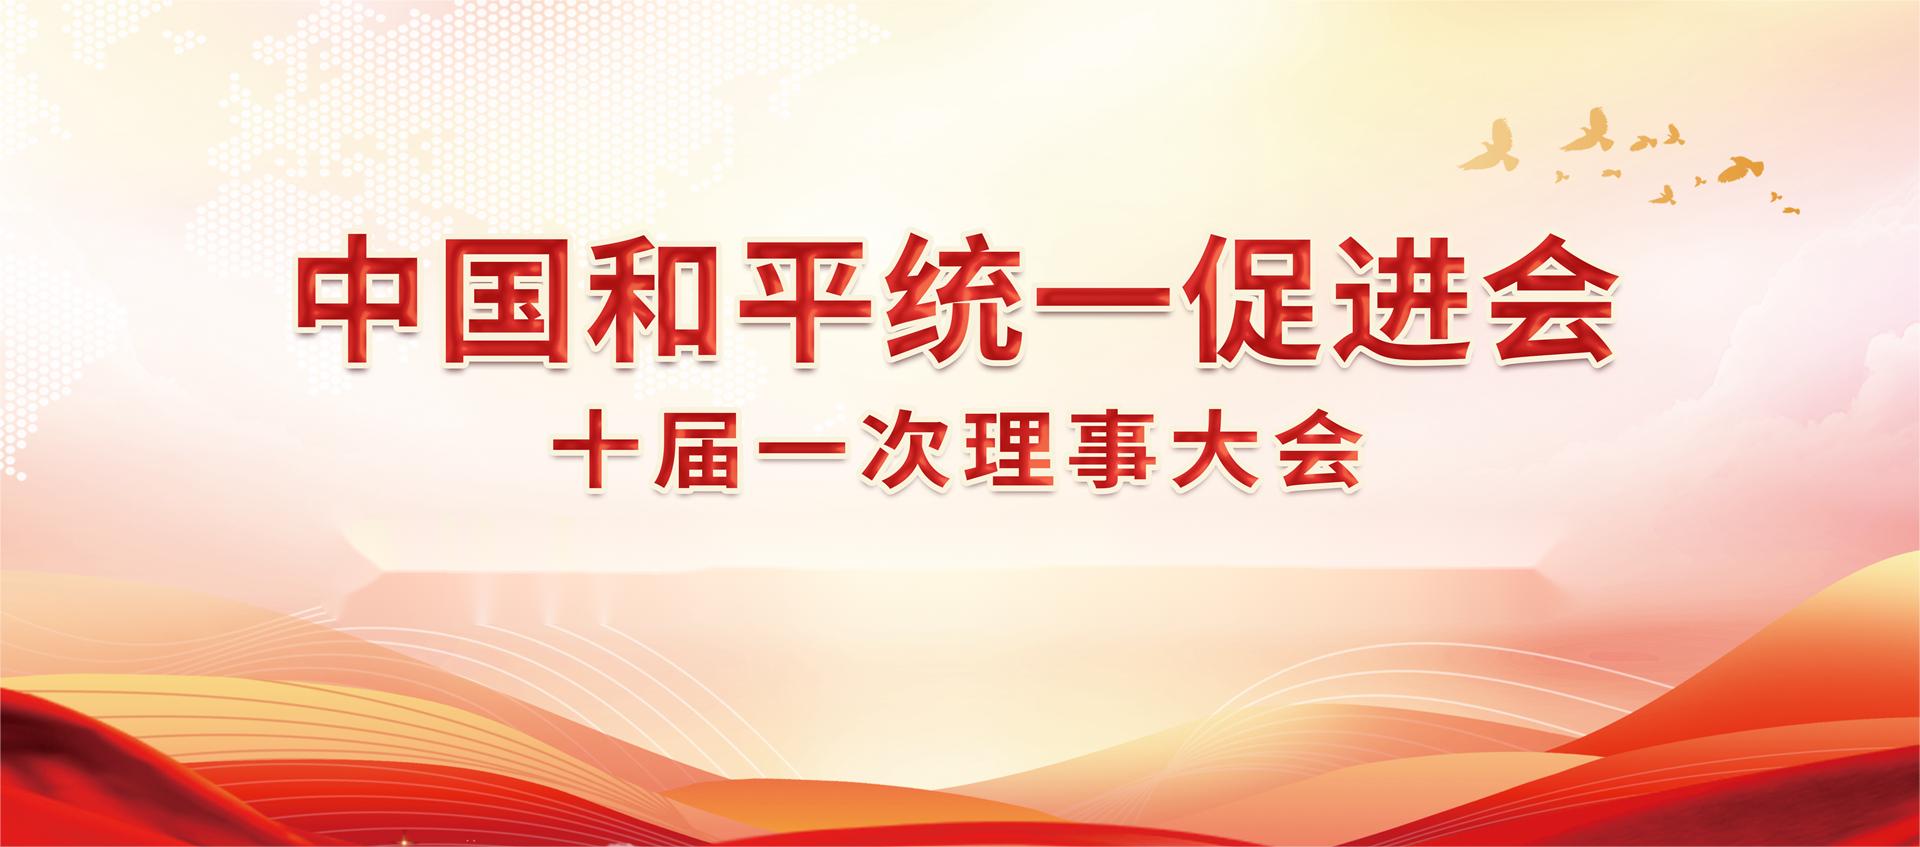 中国和平统一促进会十届一次理事大会暨第十八次海外统促会会长会议